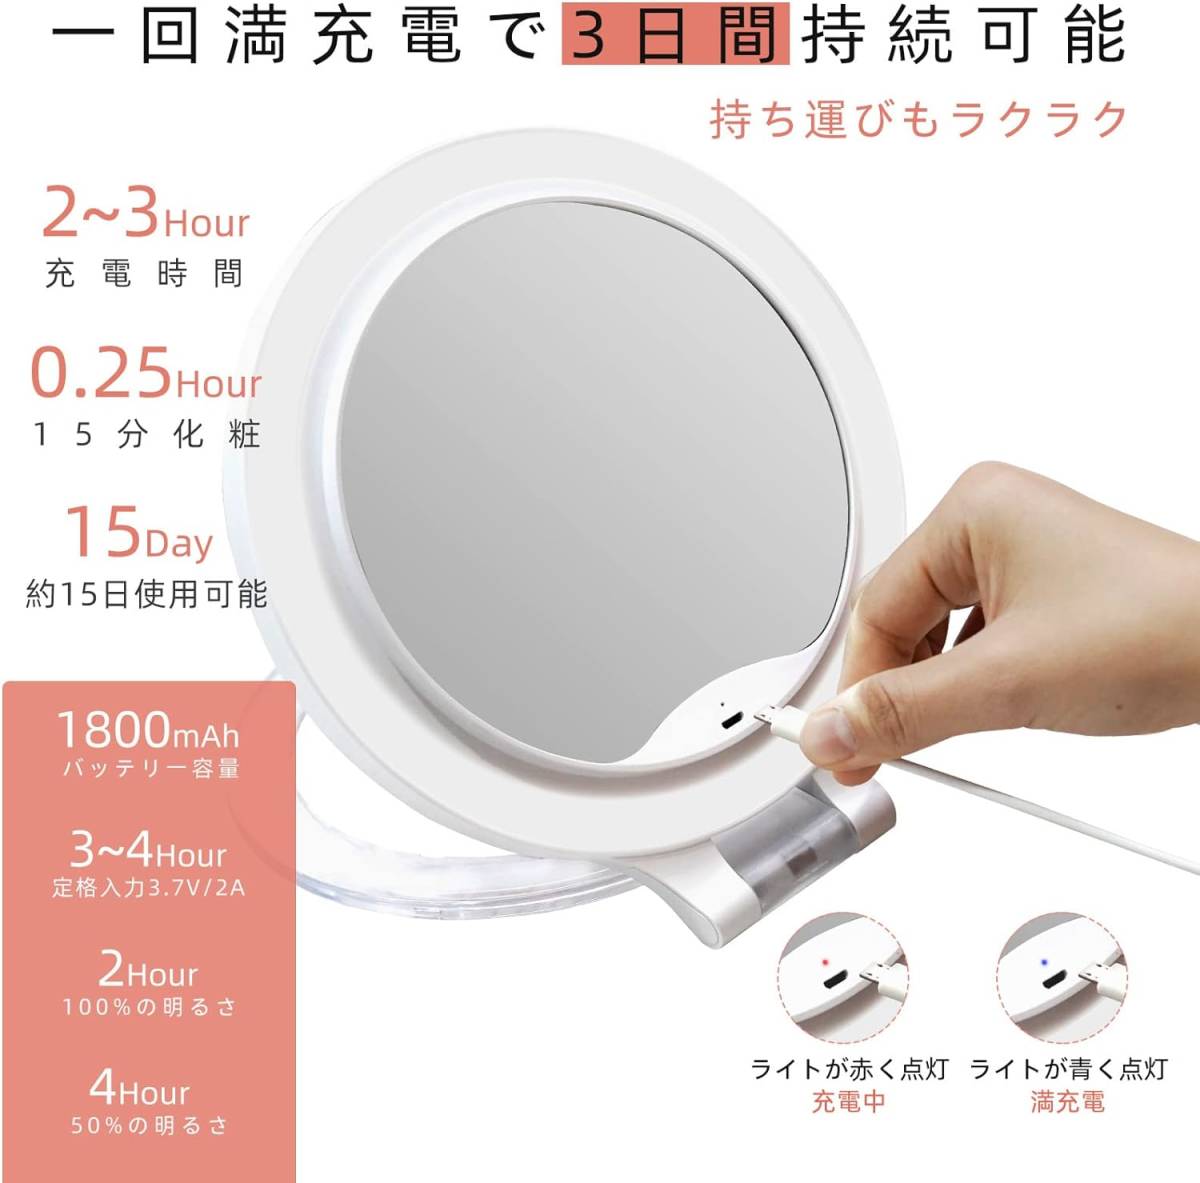 FACSINATE зеркало настольный косметика зеркало зеркало подставка для зеркала увеличительное стекло имеется экономия энергии складной 3 -ступенчатый яркость регулировка приставного типа ( белый )/566